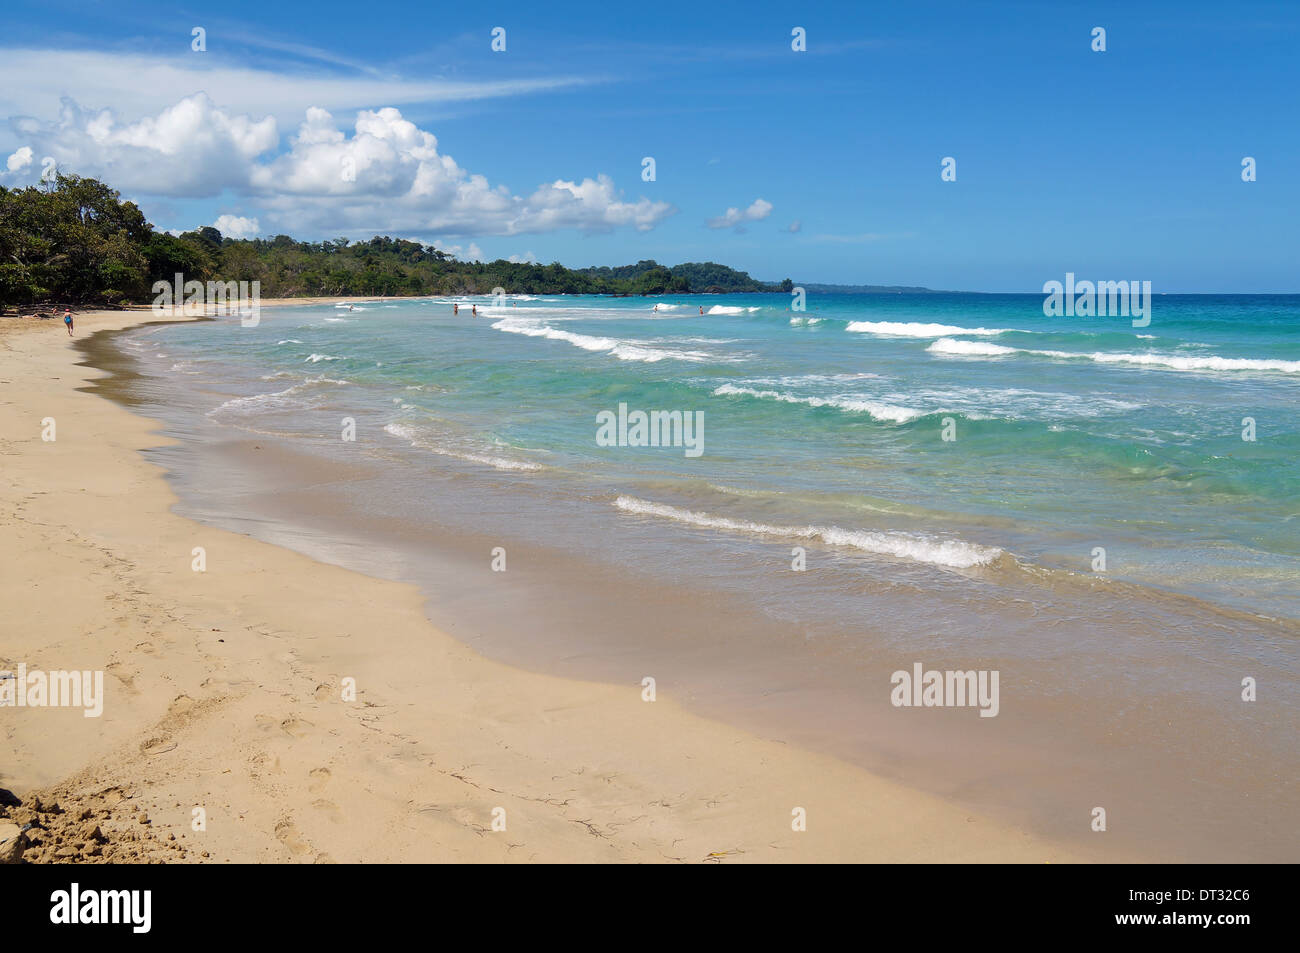 Rana rossa in spiaggia sulla Costa Caraibica di Panama, isola Bastimentos, arcipelago di Bocas del Toro Foto Stock